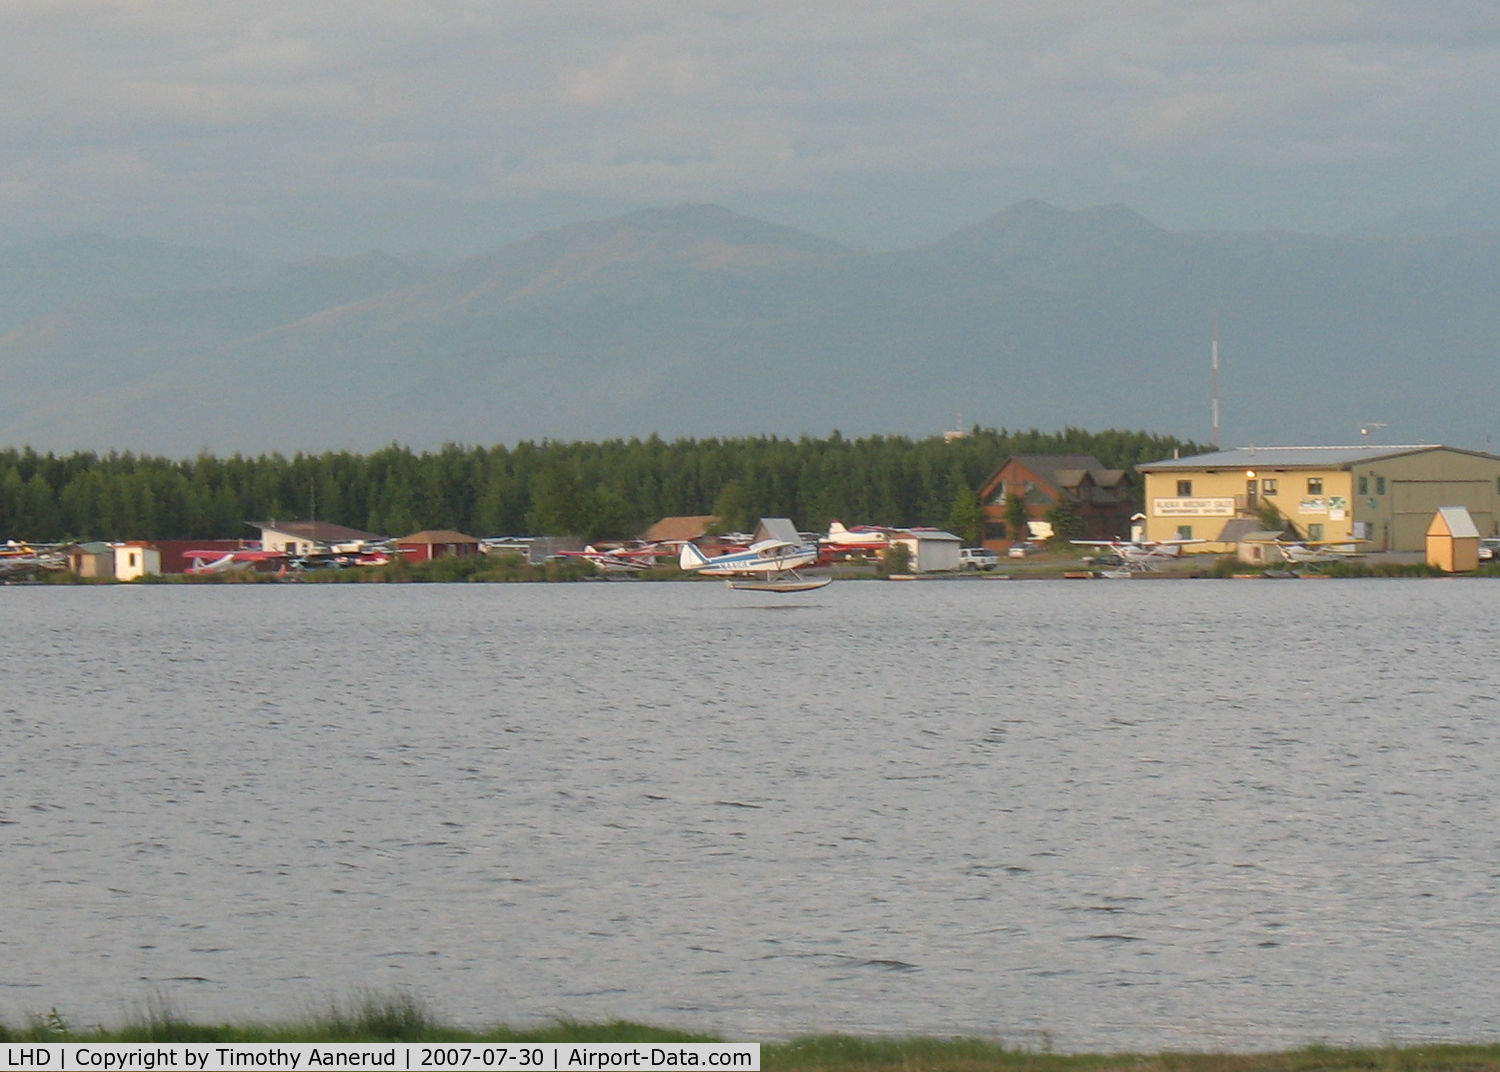 Lake Hood Seaplane Base (LHD) - Landing on Lake Hood